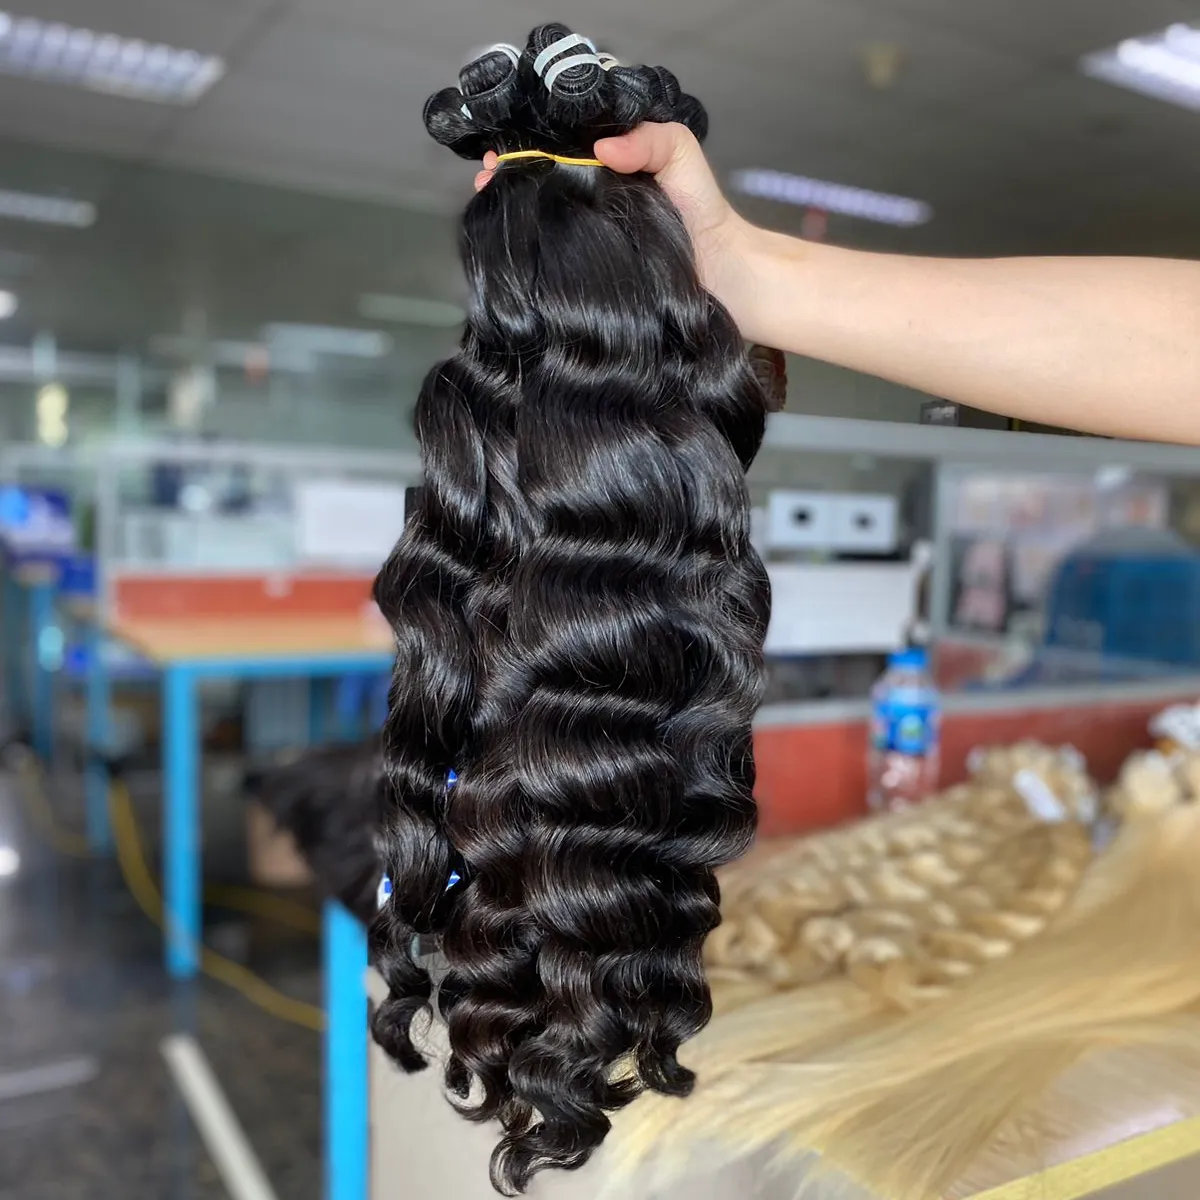 حزمة شعر مموجة طبيعية لحمة الشعر الأفضل مبيعًا عينة مجانية مصنوعة في فيتنام